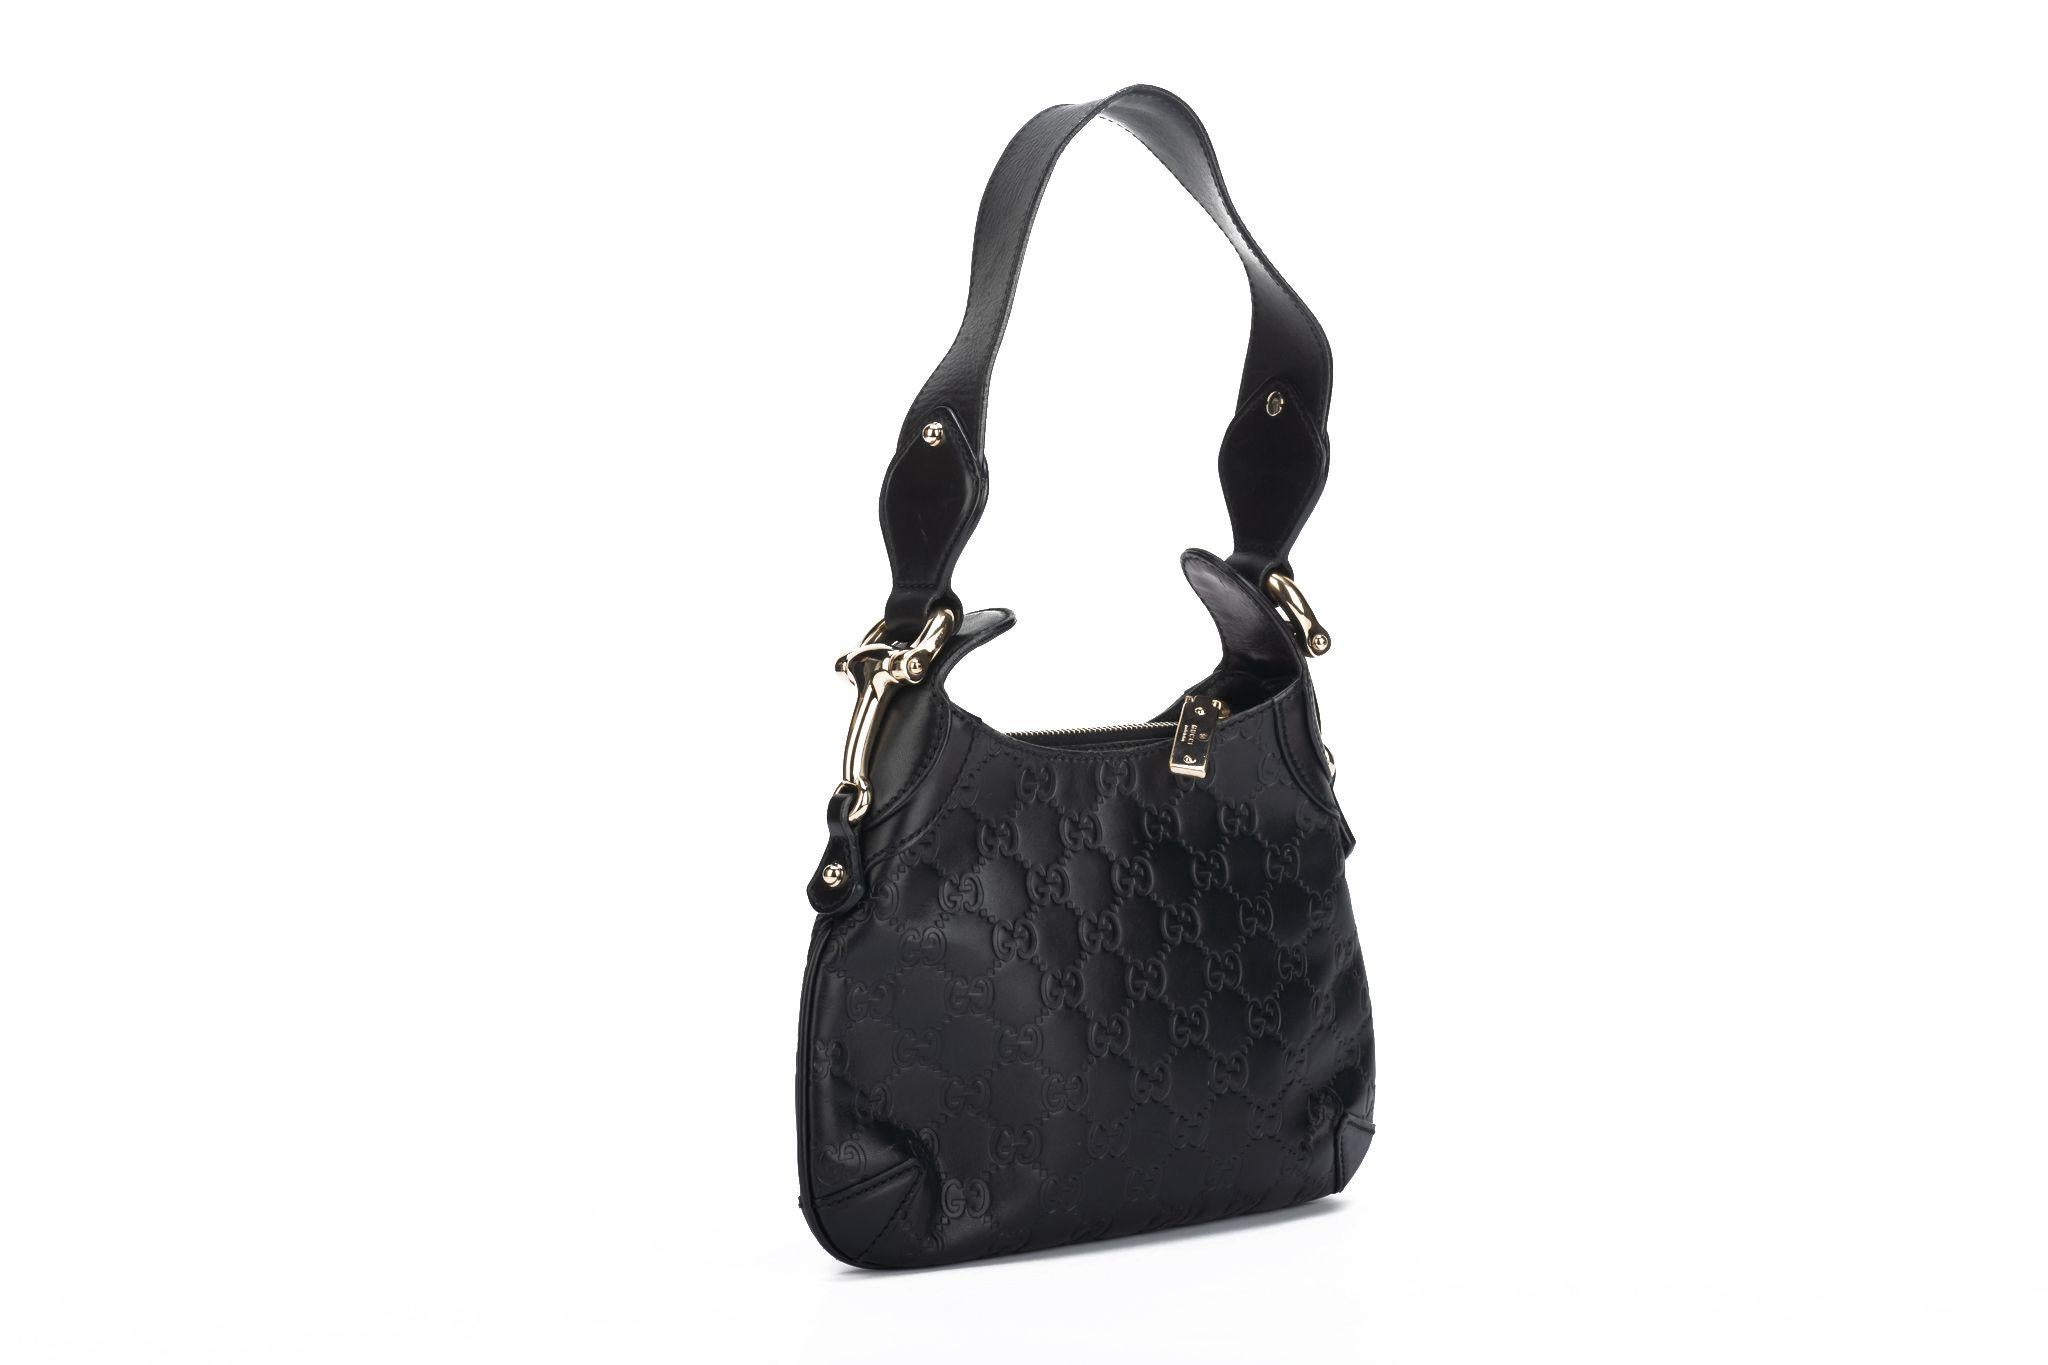 Gucci preloved black leather guccissima print shoulder bag , oversize hardware Shoulder drop 8”. Generic dust cover.